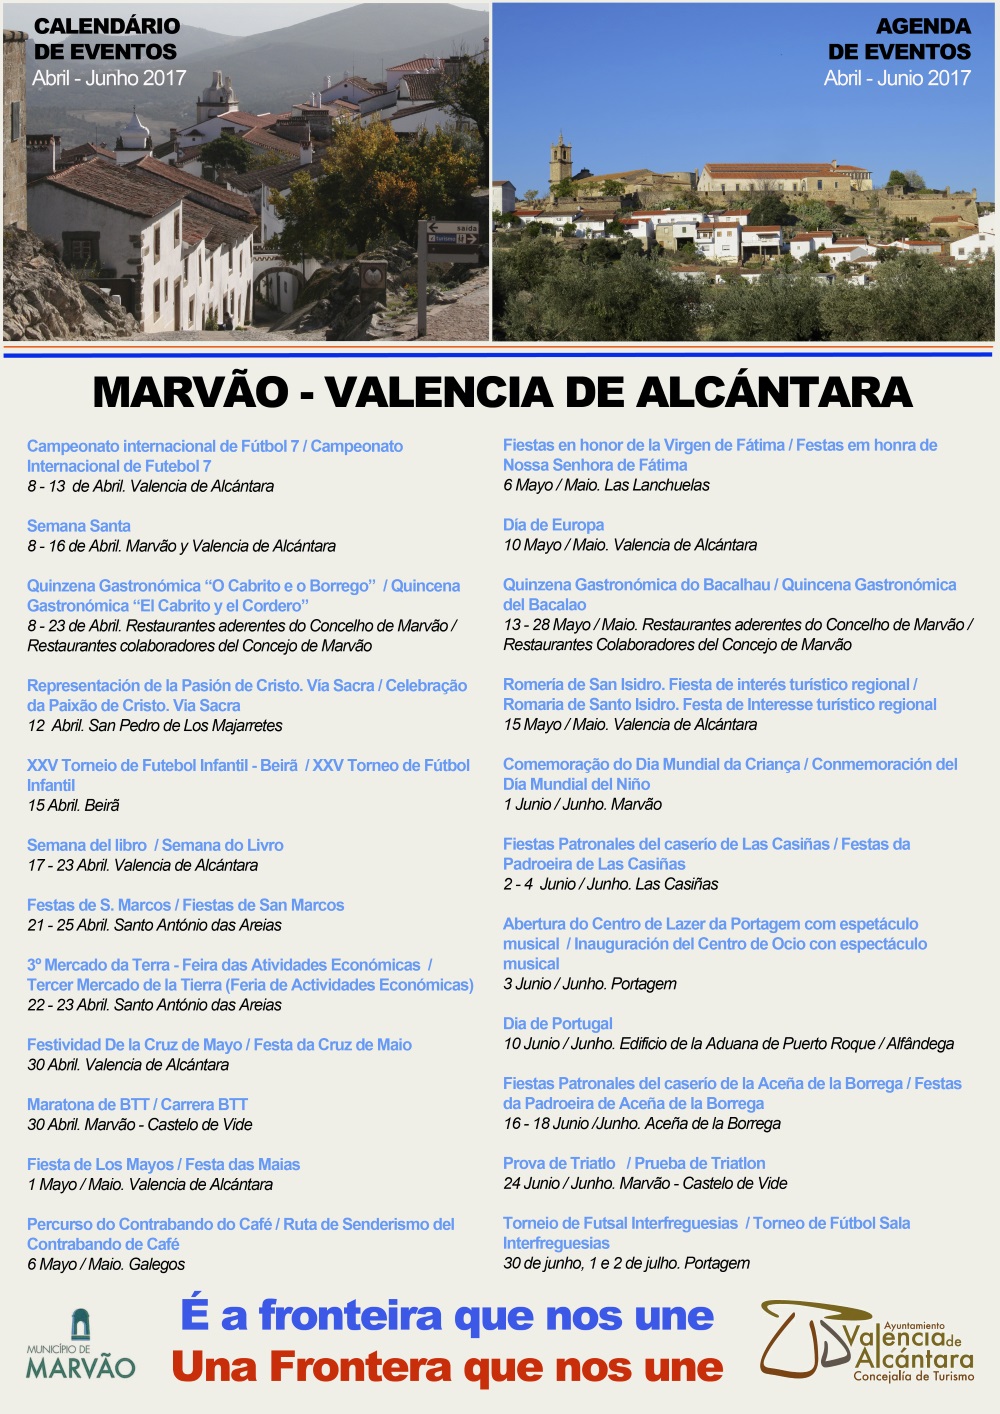 845_Agenda_Eventos_Marvao_Valencia_Abril_2017